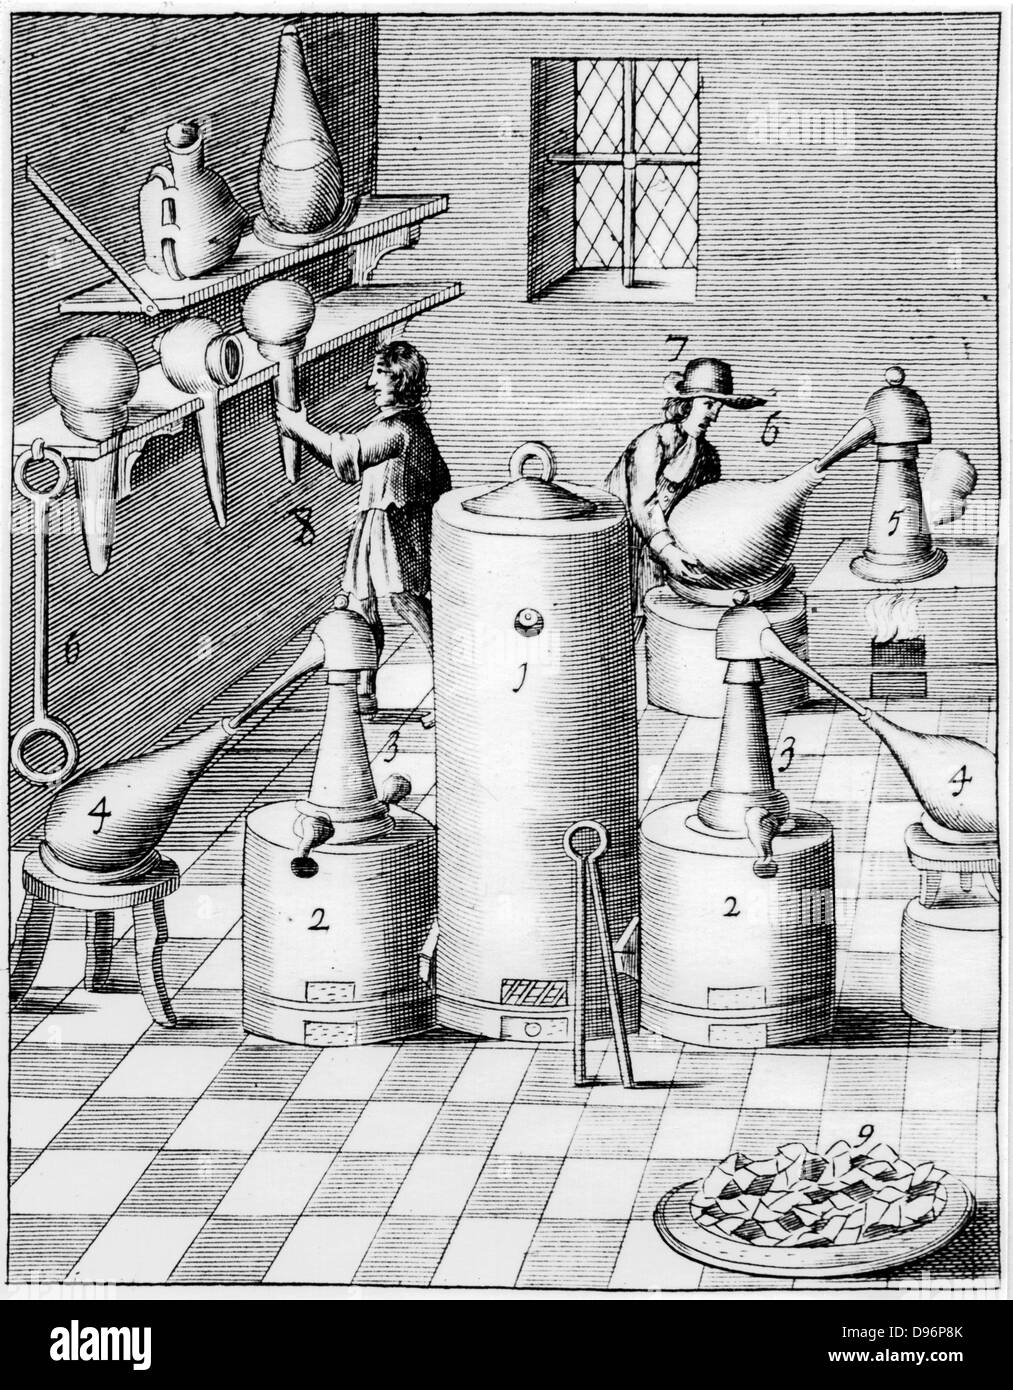 Laboratorio per la raffinazione di oro e argento, che mostrano tipiche attrezzature di laboratorio. 1, Athanor o 'Slow Harry', un auto-forno di alimentazione mantenendo costante la temperatura. 2,2. Forni a lato con ricevitori su sgabelli, 4,4. Sulla destra del ripiano superiore è un recipiente di vetro sagomato come un vaso ermetico. Dal 1683 edizione in lingua inglese di "Beschreibung allerfurnemisten mineralischen Ertzt', Lazarus Ercker, (Praga, 1574). Incisione su rame. Foto Stock